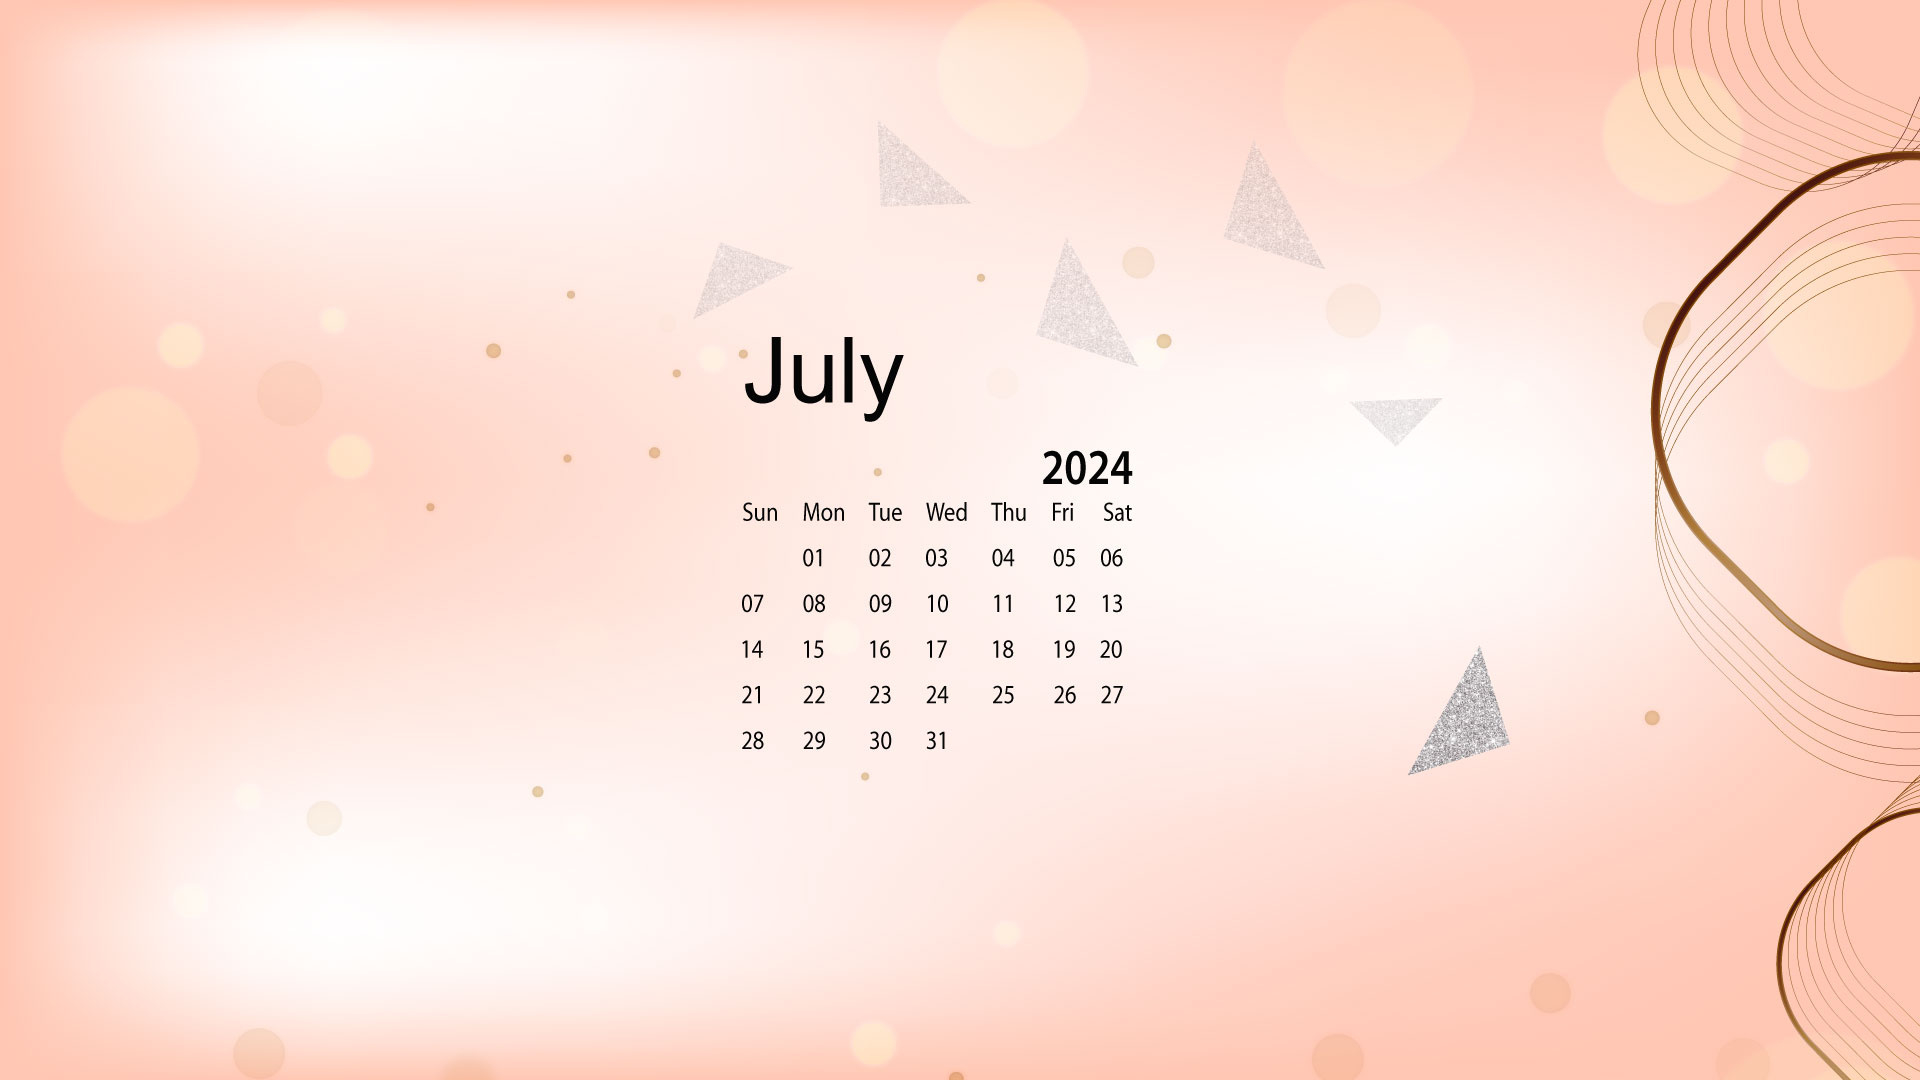 July 2024 Desktop Wallpaper Calendar - Calendarlabs with July 2024 Calendar Screensaver